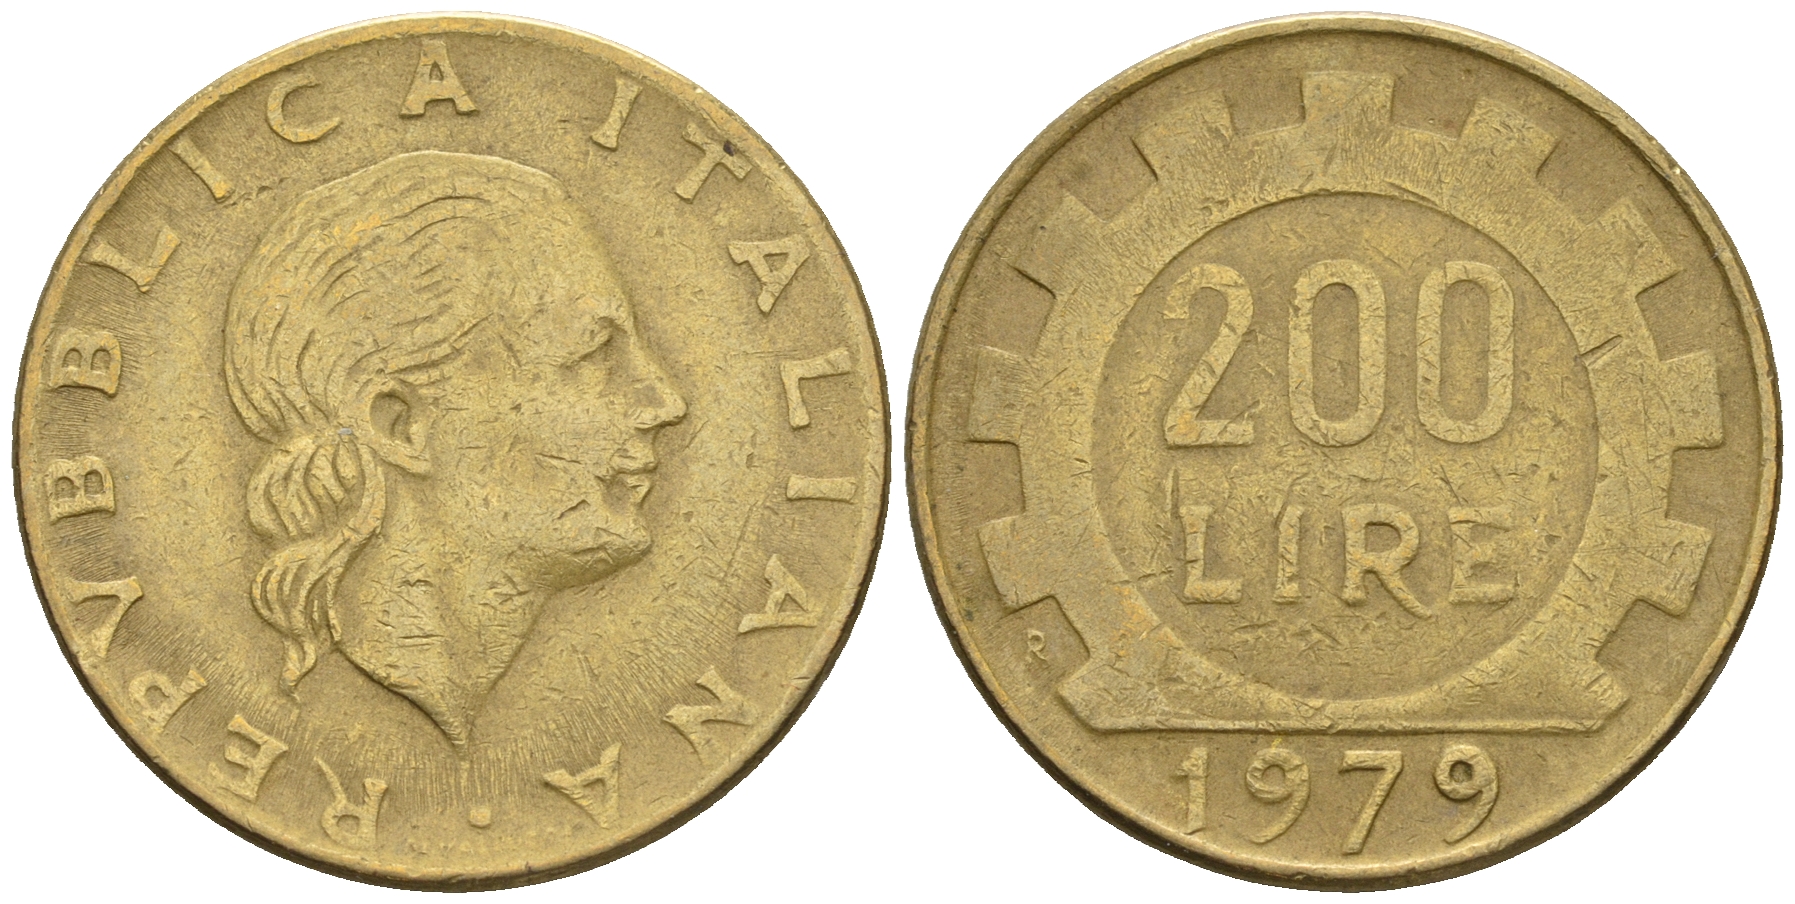 Италия 200 лир 1979. Алюминиевая бронза. 200 Лир в рублях. Италия 50 лир 1979 (80517997).